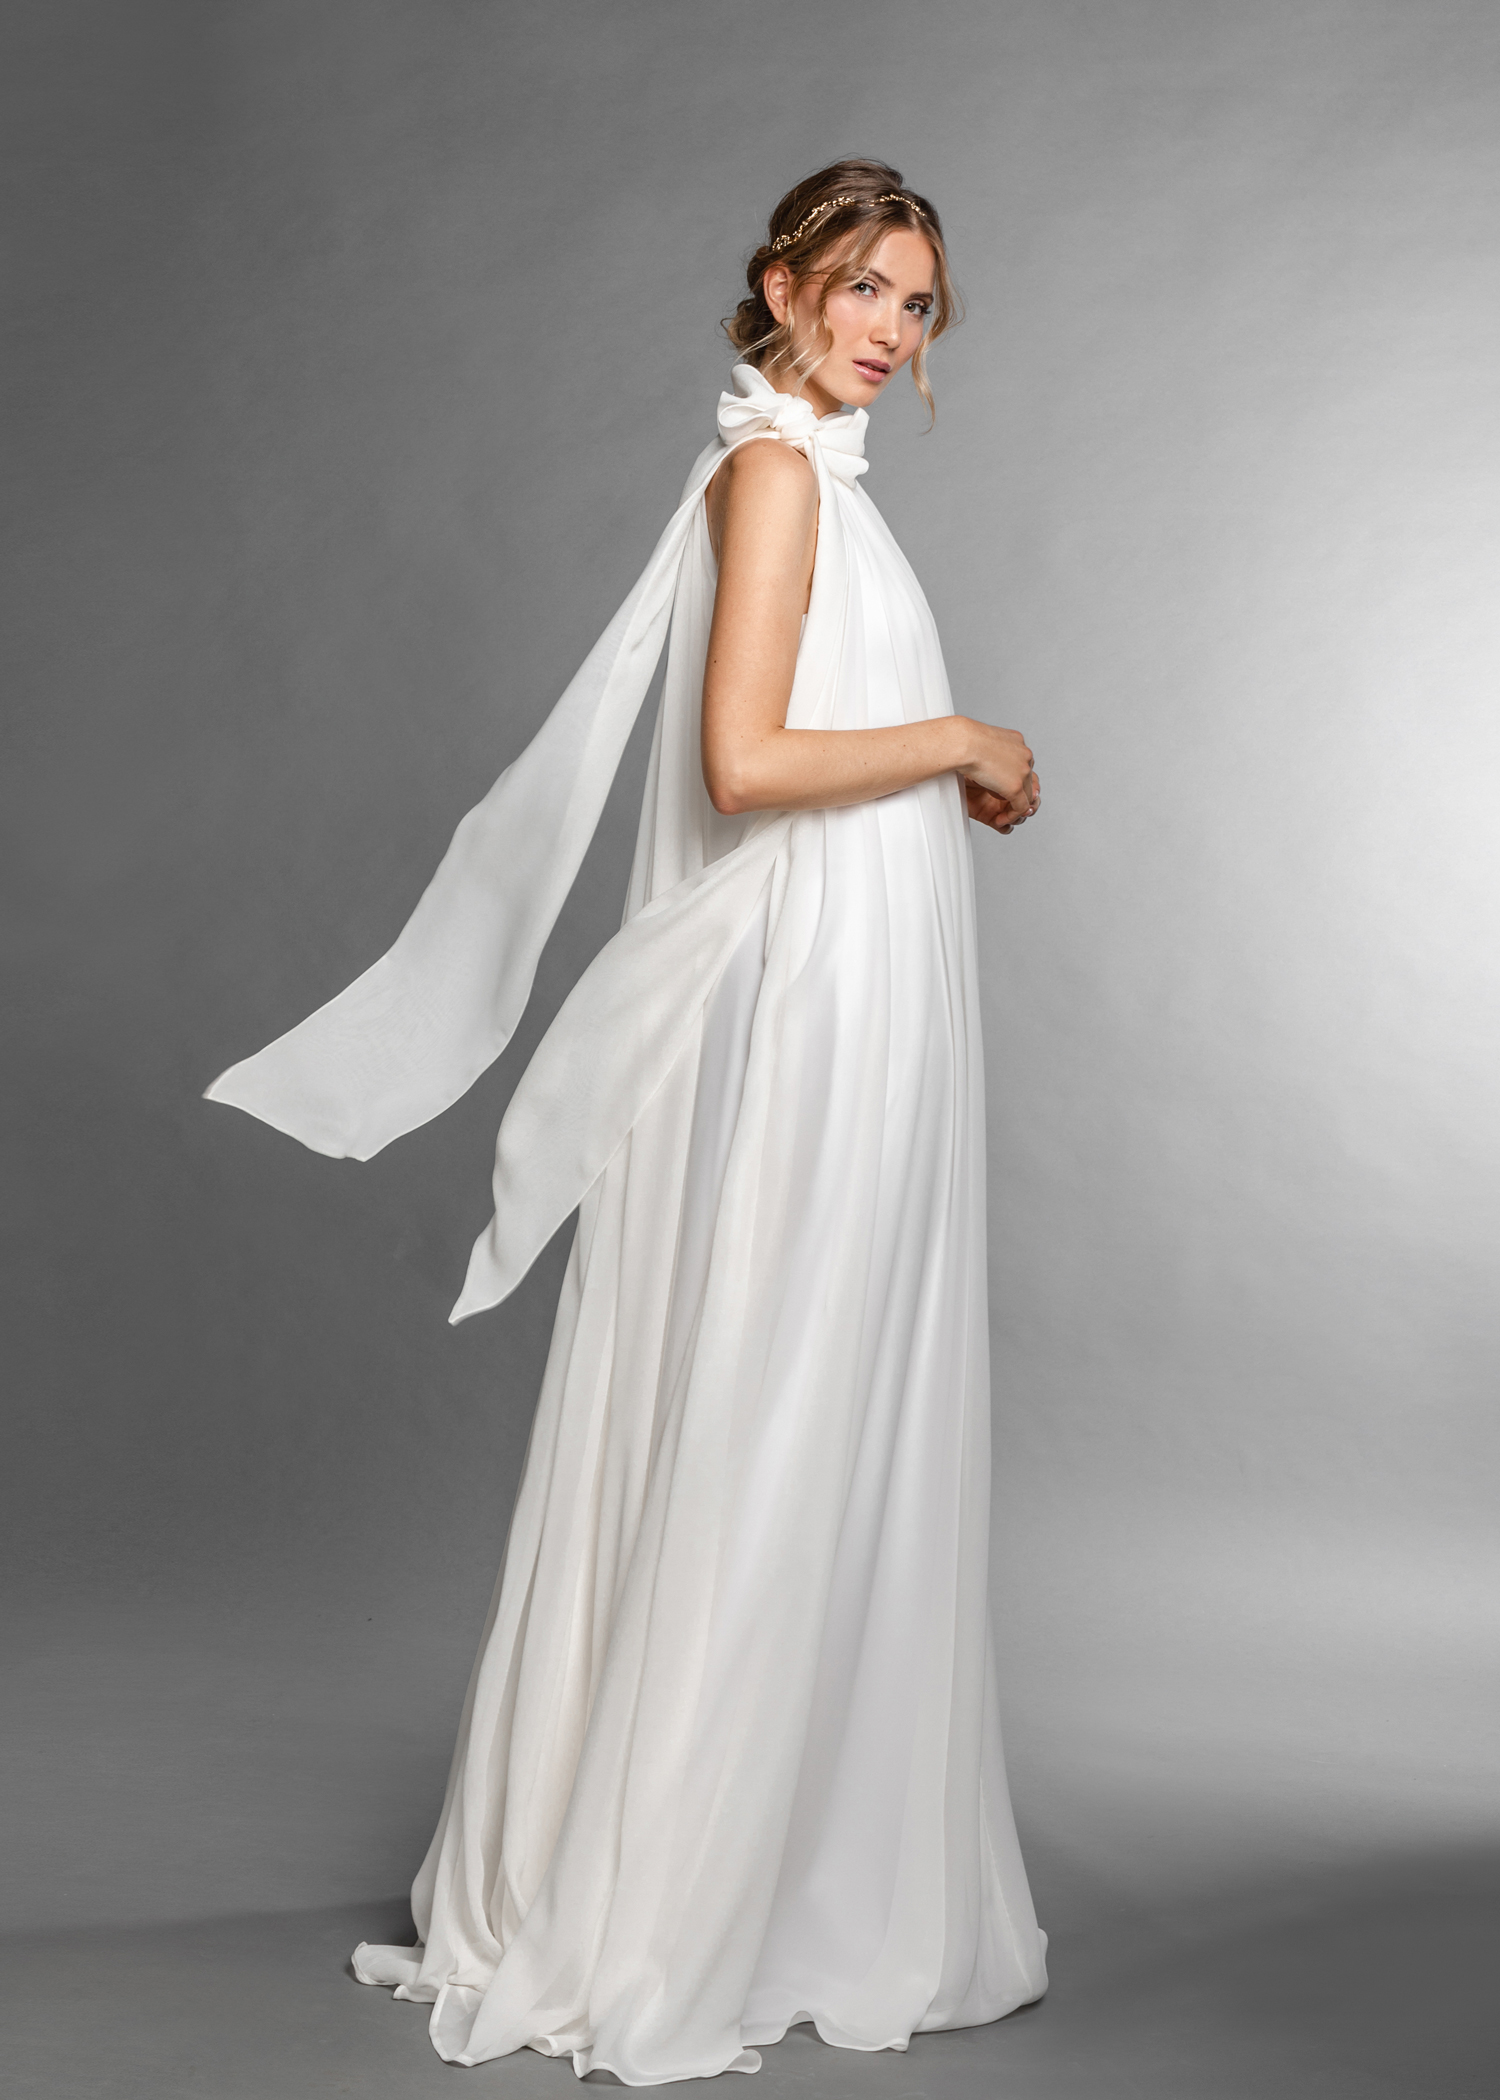 Hochzeitskleider Ein wallendes Brautkleid mit feinem fallenden Stoff an einer Frau mit blondem Haar